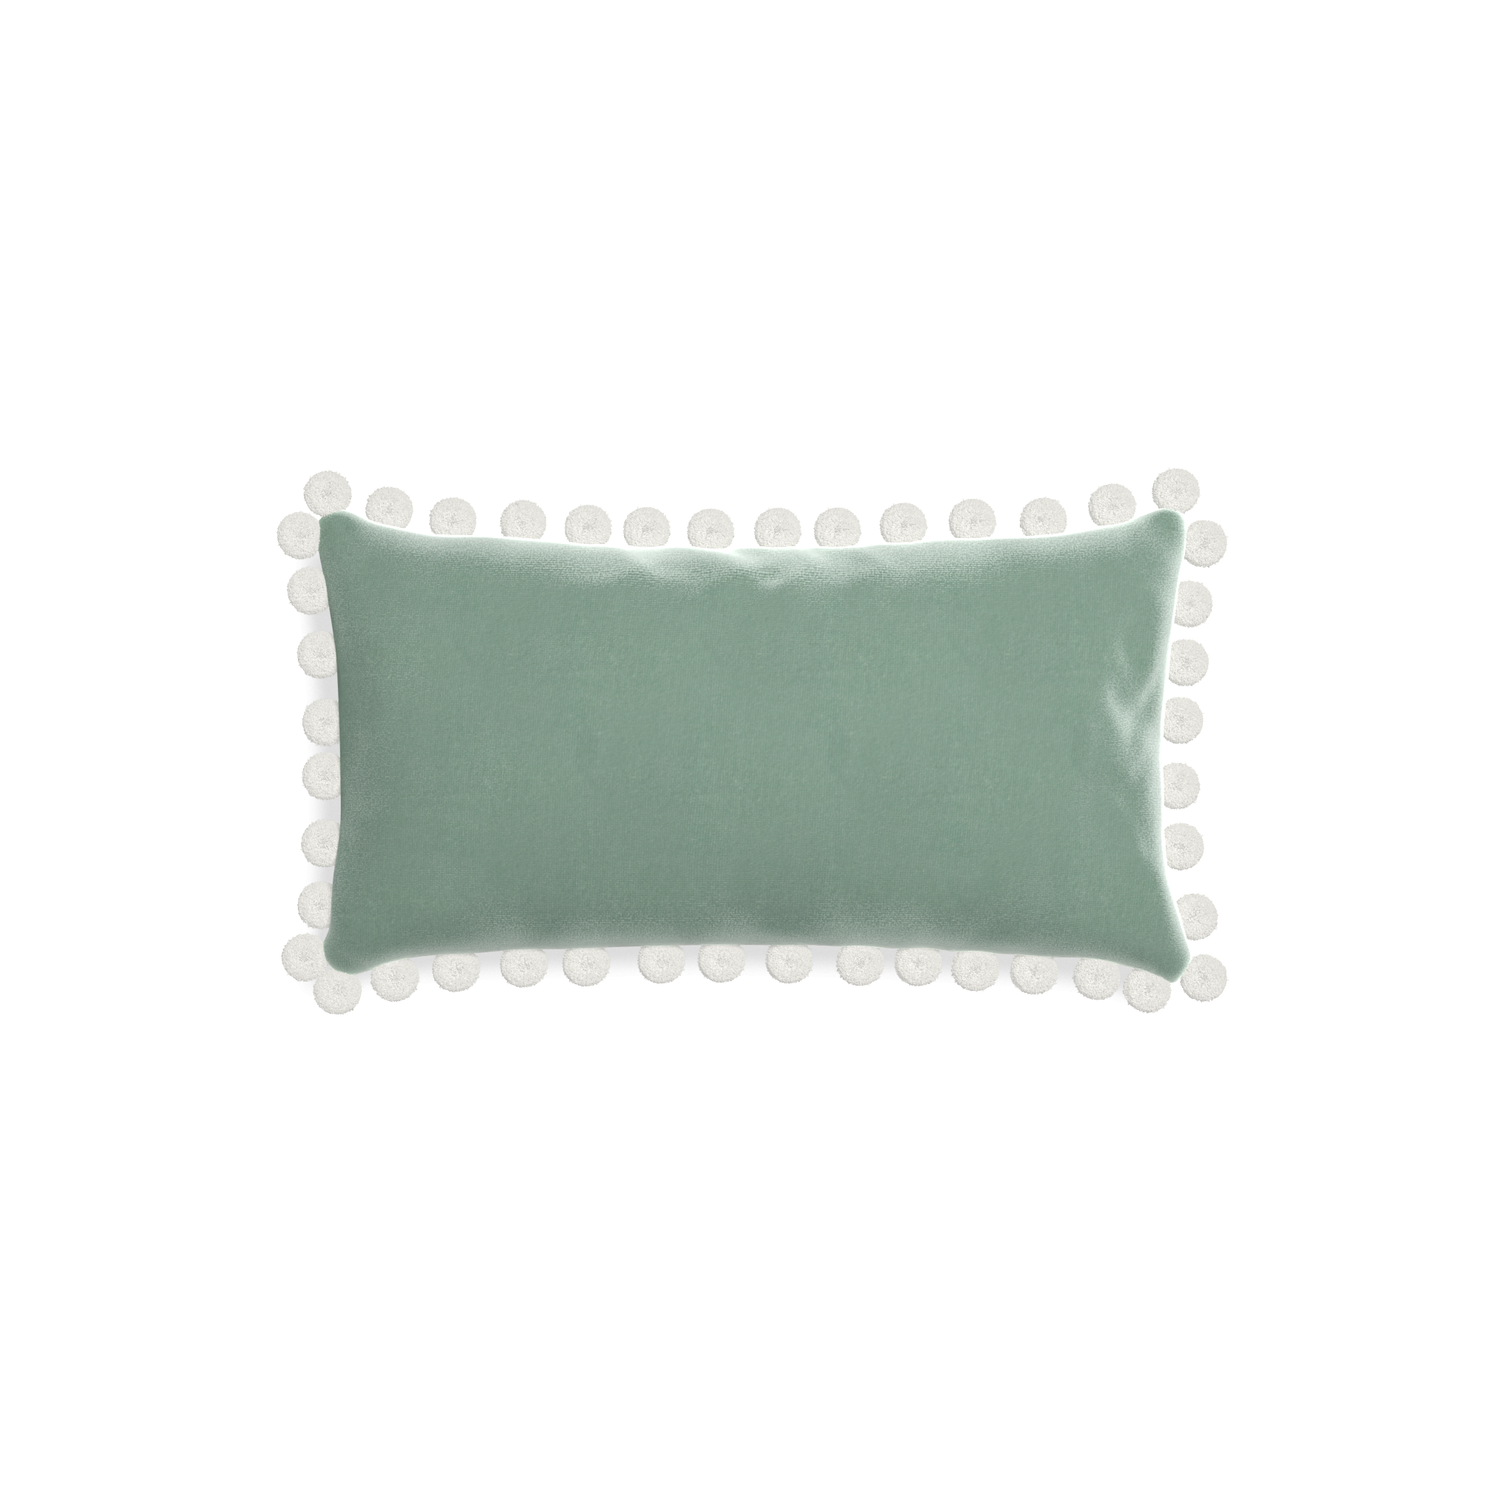 rectangle blue green velvet pillow with white pom poms